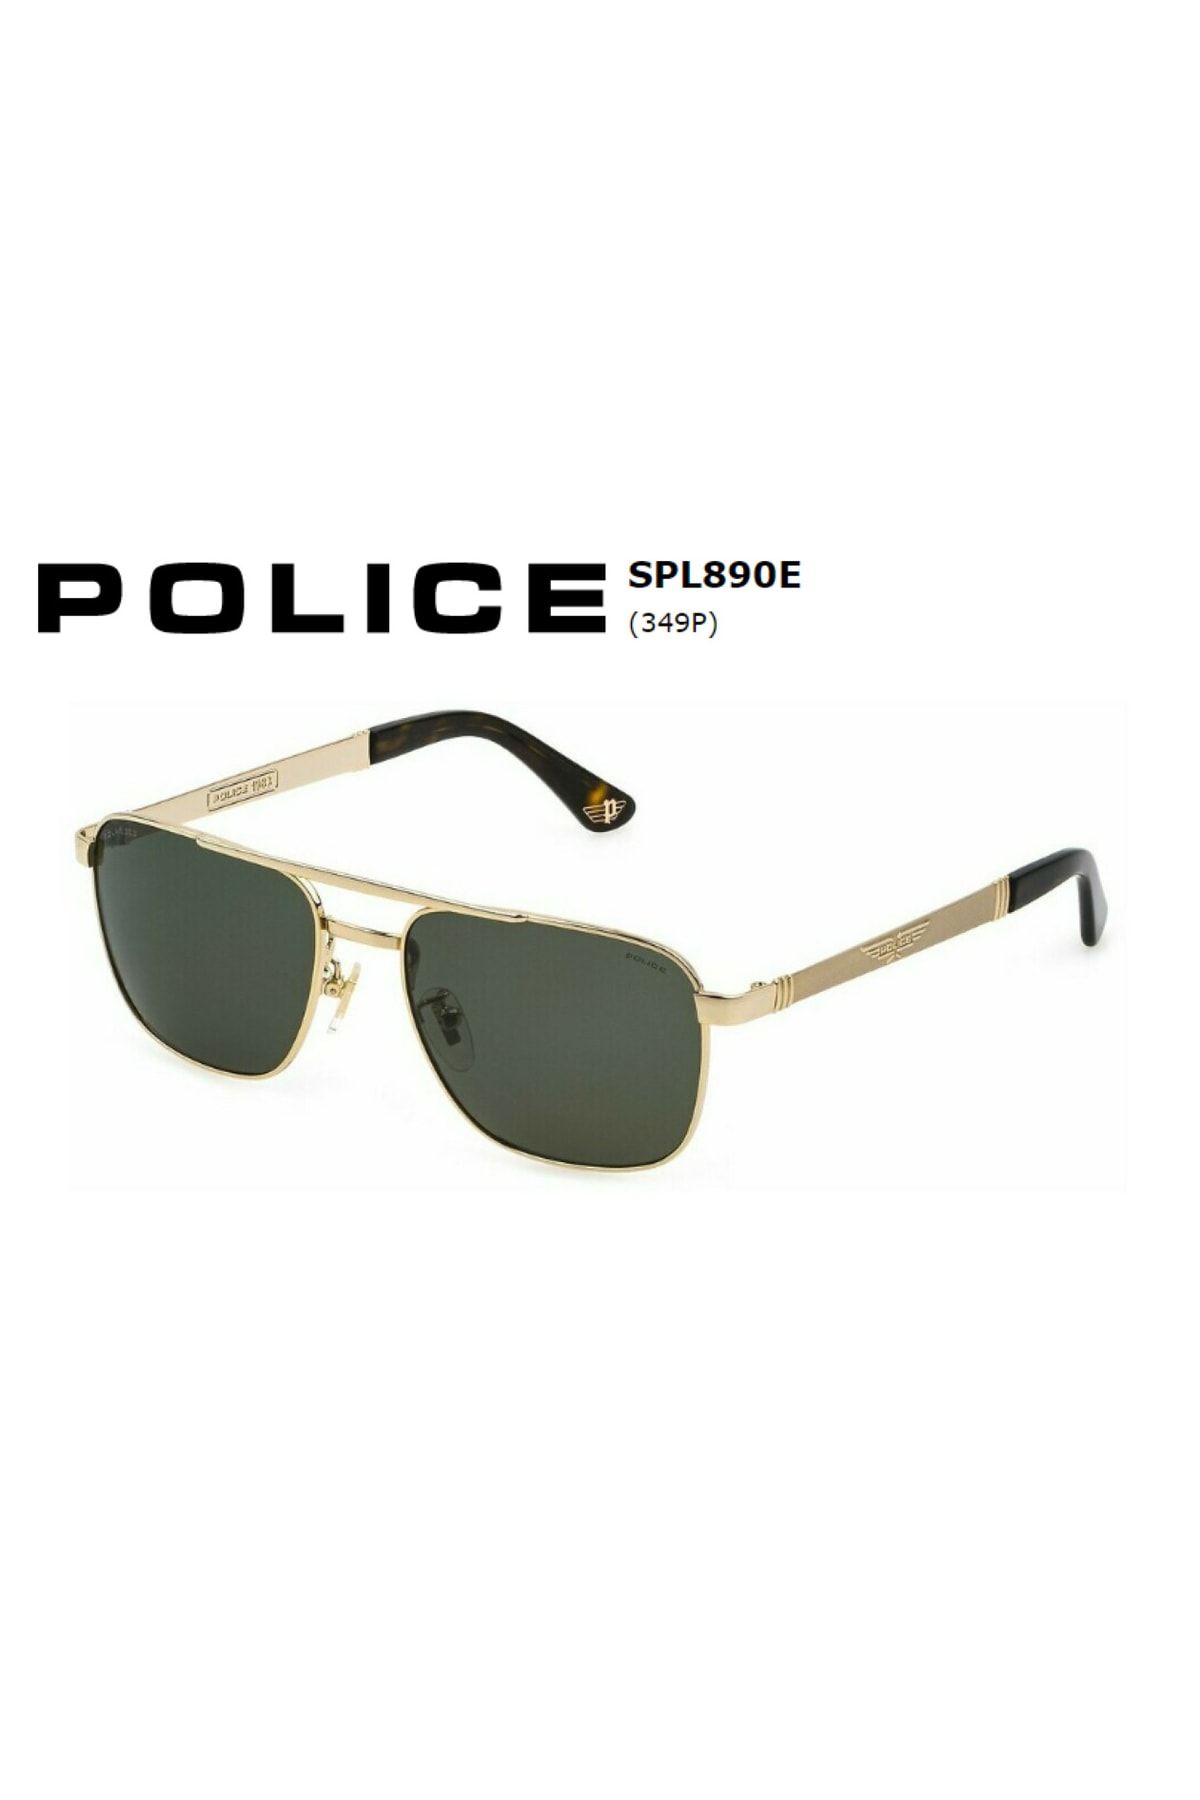 POLICE Güneş Gözlüğü Spl890v Col. 349p 55